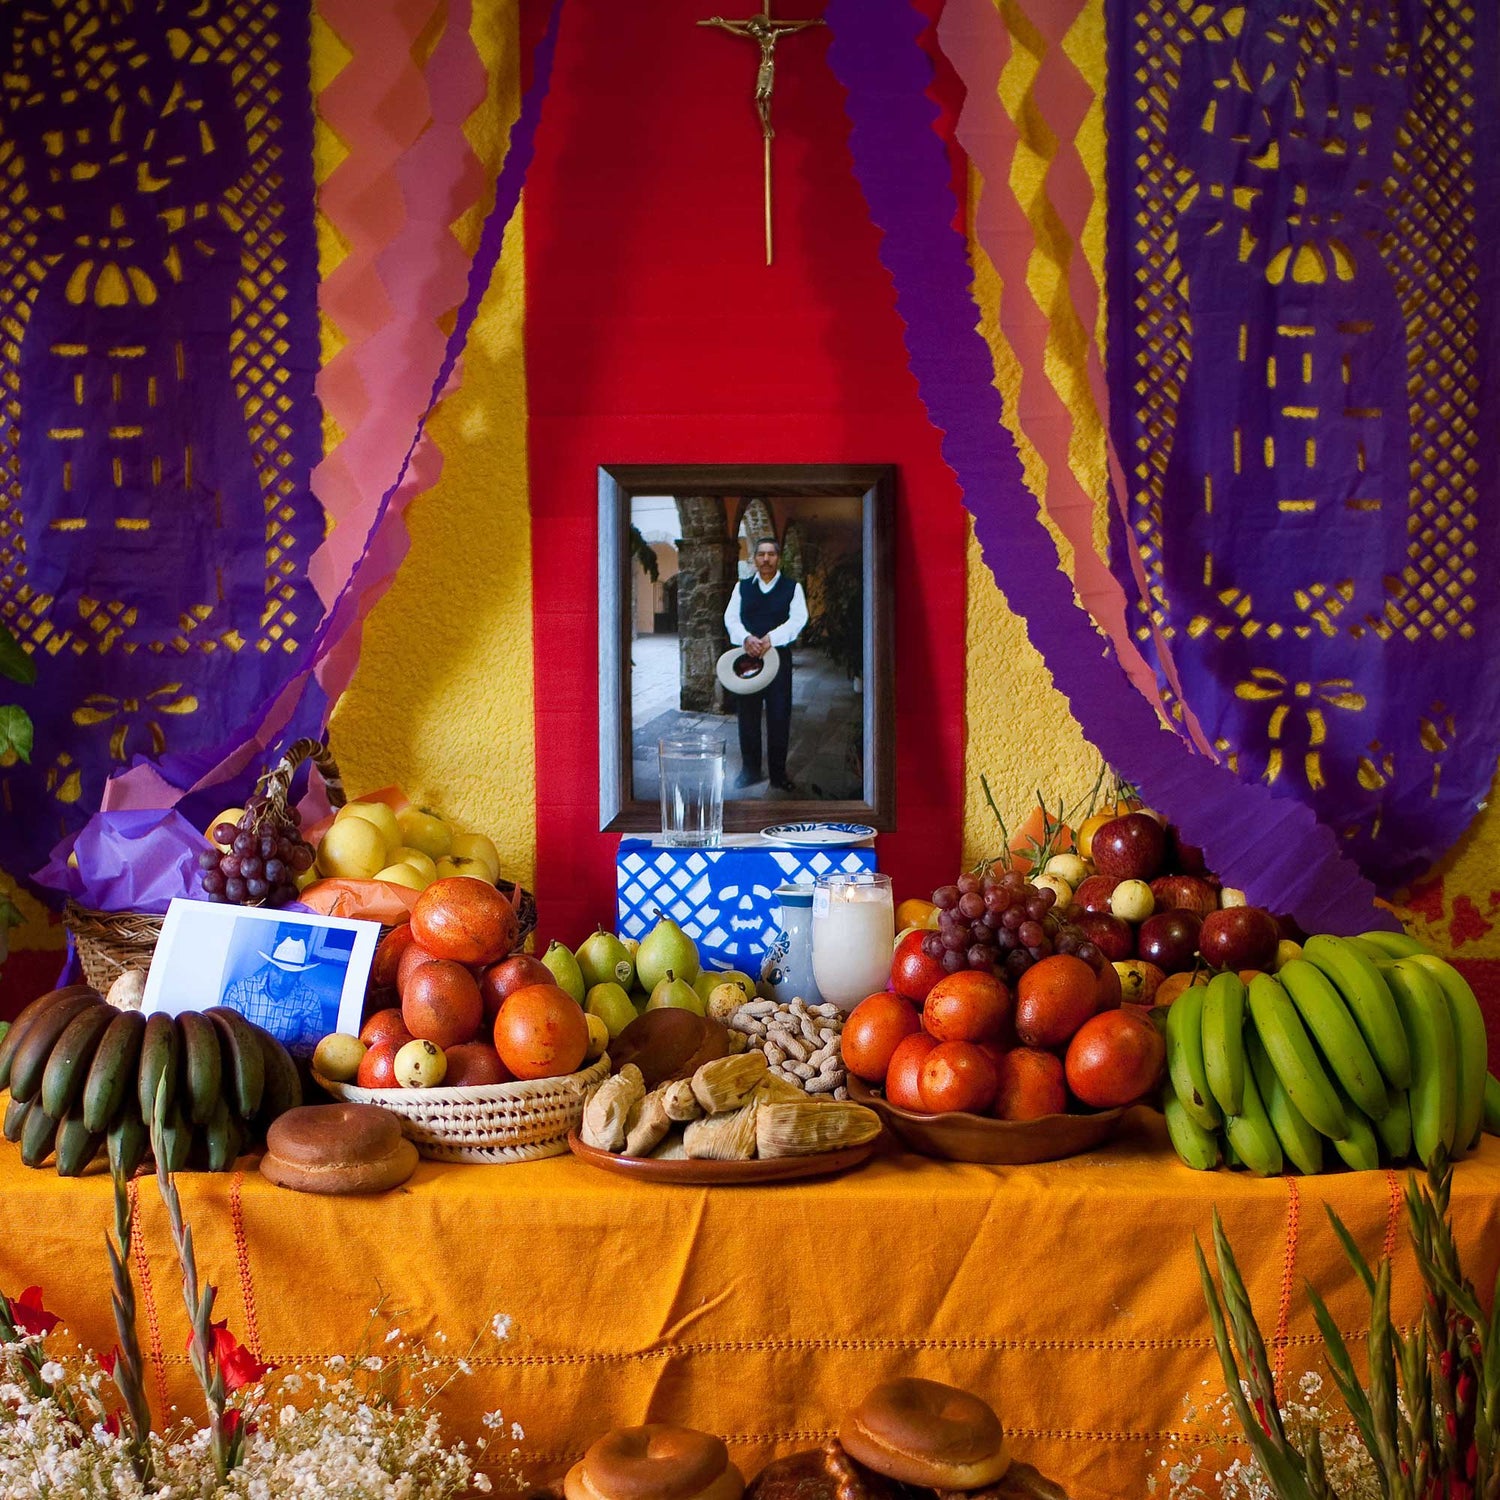 Día de Los Muertos (Day of the Dead): The Ofrenda's Significance